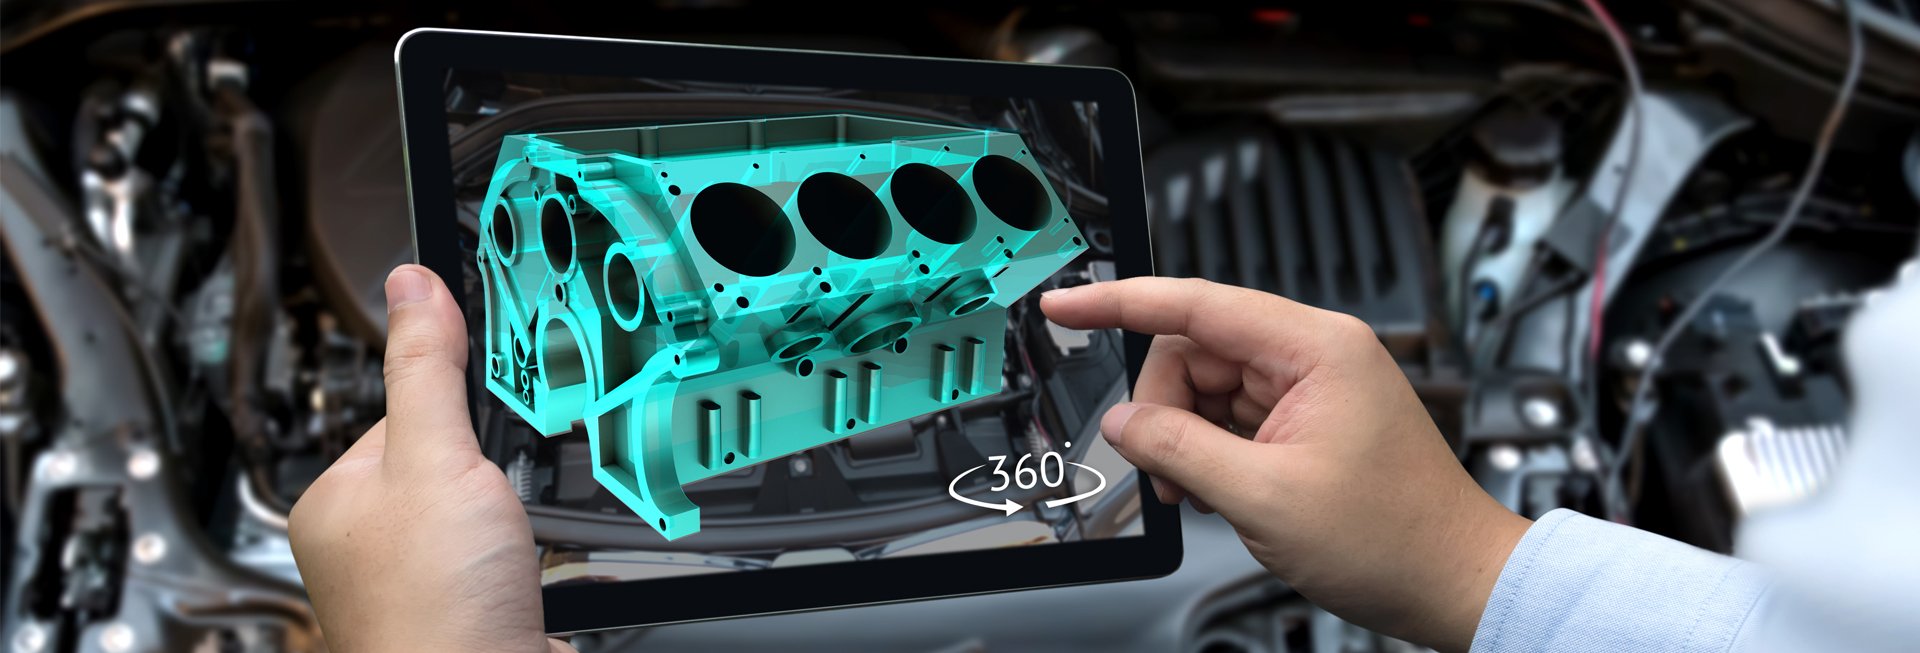 360-Grad-Ansicht eines Motors auf einem Tablet.